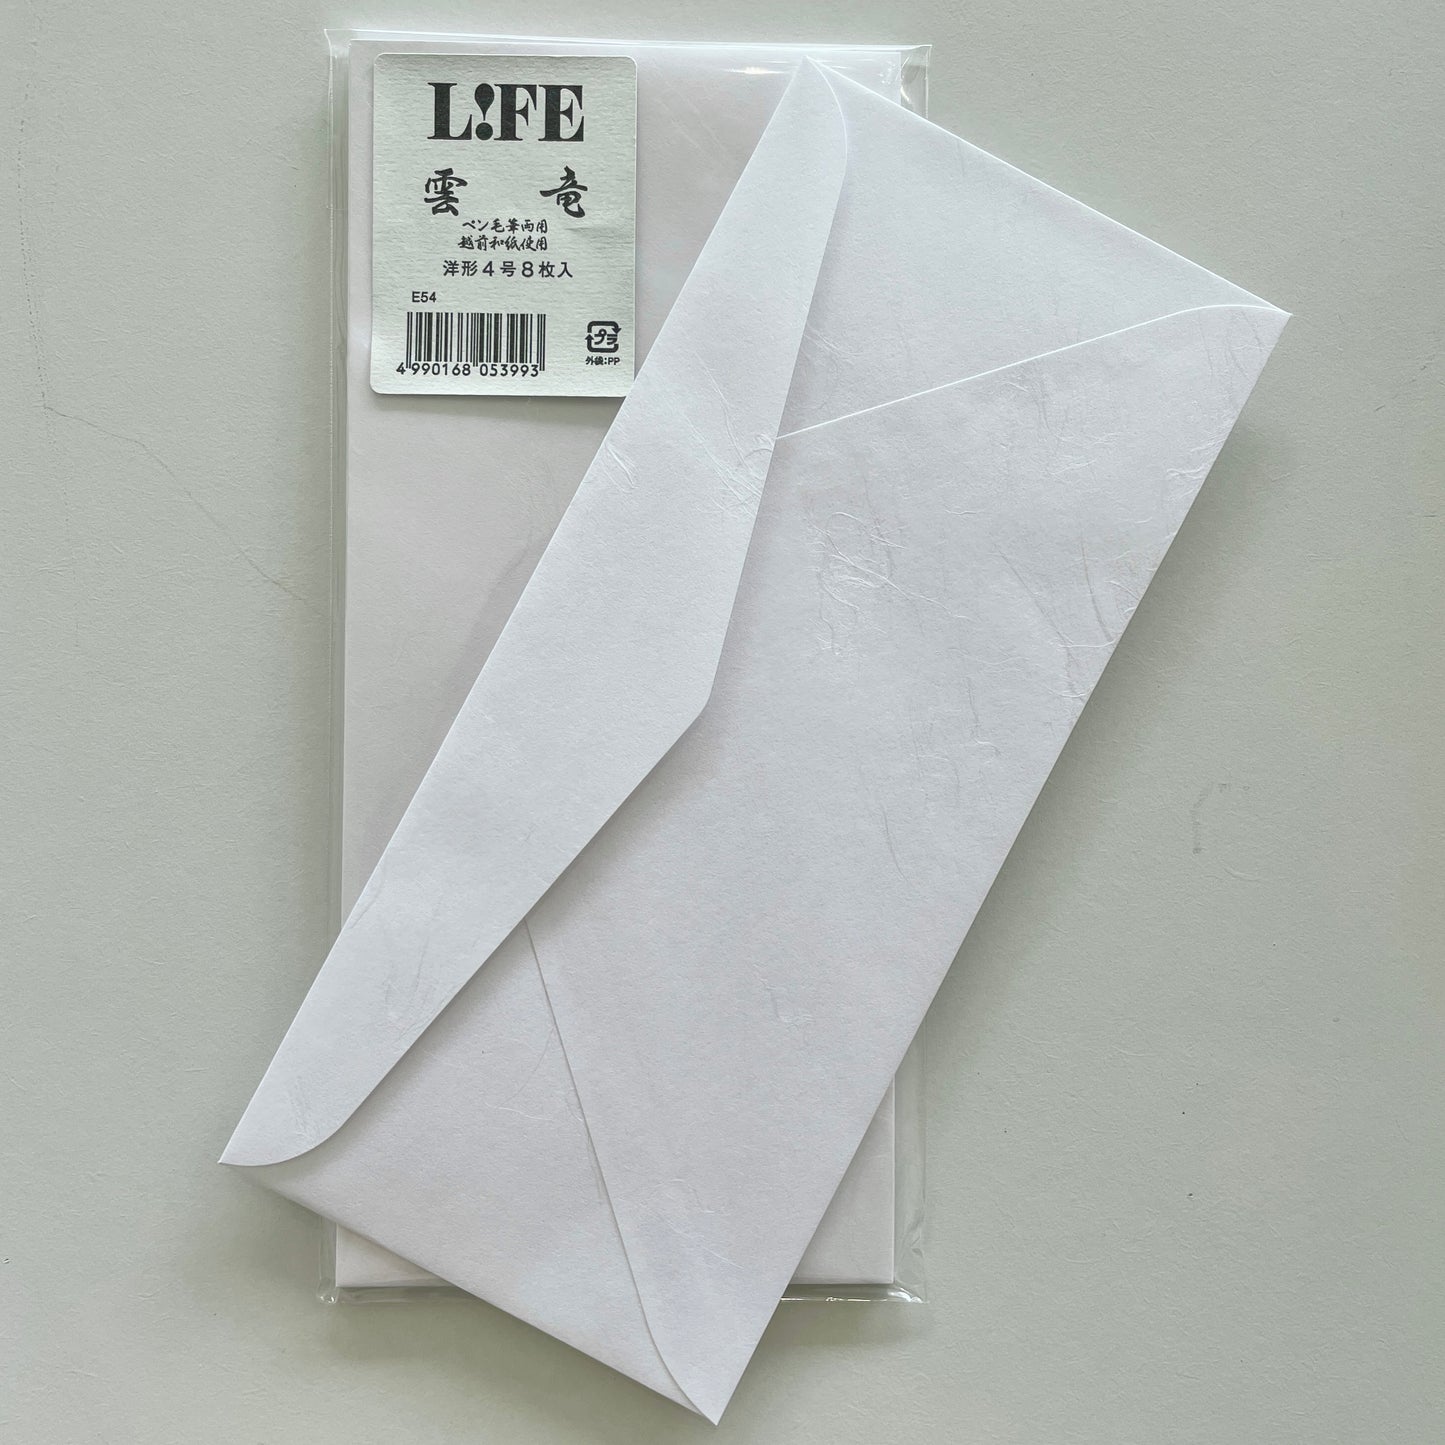 Life Letter Envelopes